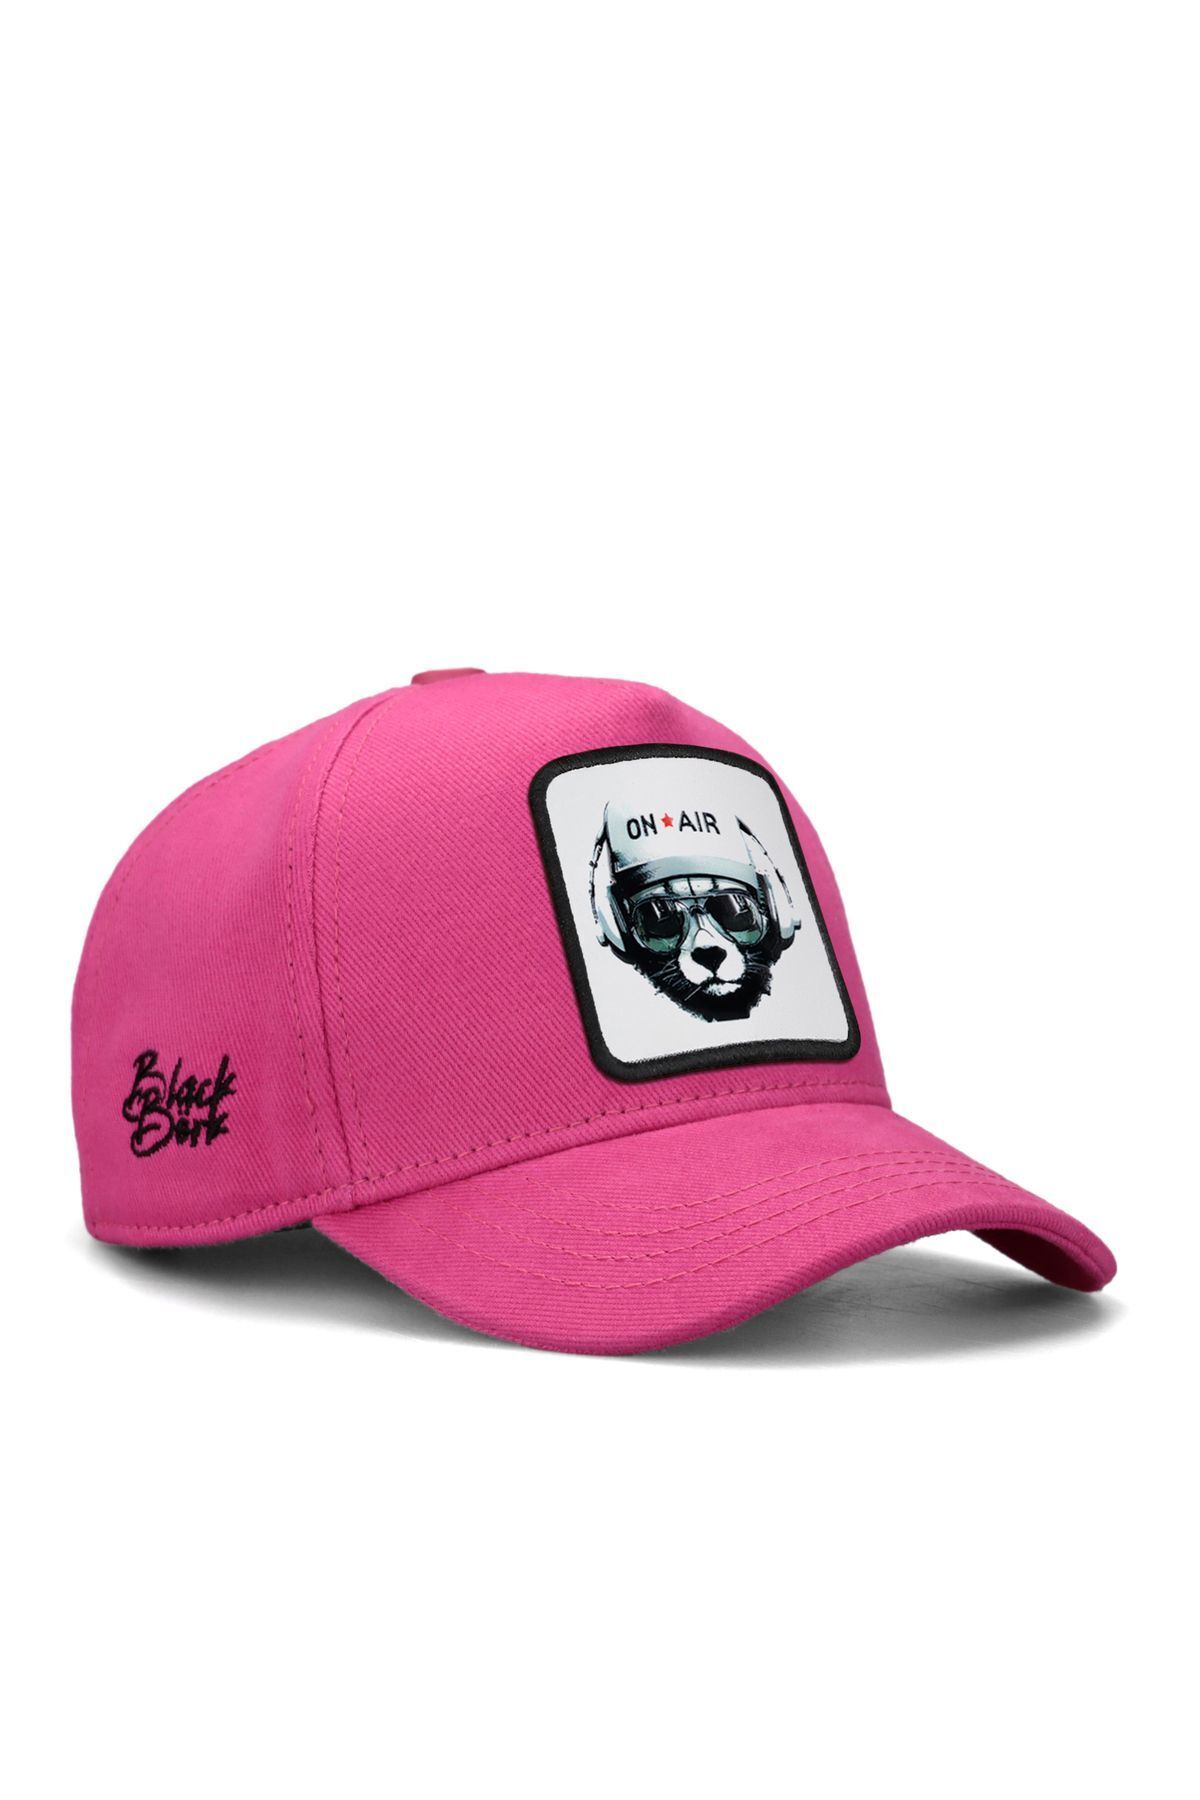 BlackBörk V1 Baseball Kids Ayı - 1bs Kod Logolu Unisex Pembe Çocuk Şapka (CAP)